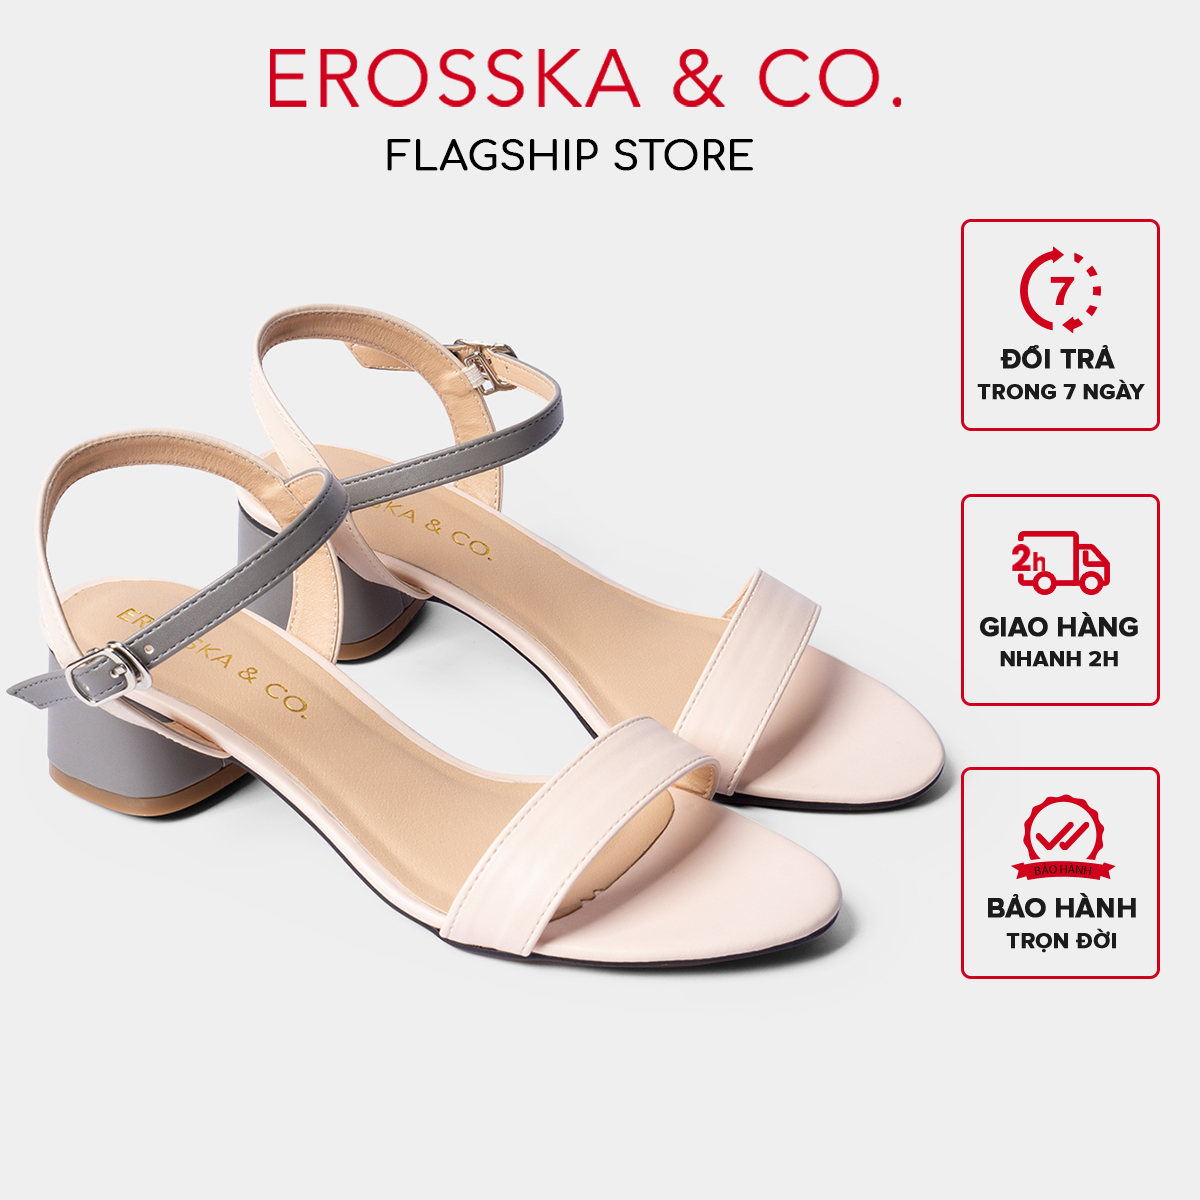 Giay sandal cao got Erosska thời trang mui tron phôi dây nhiêu mau tinh tê cao 3cm EB019 - Xam phôi kem - 39